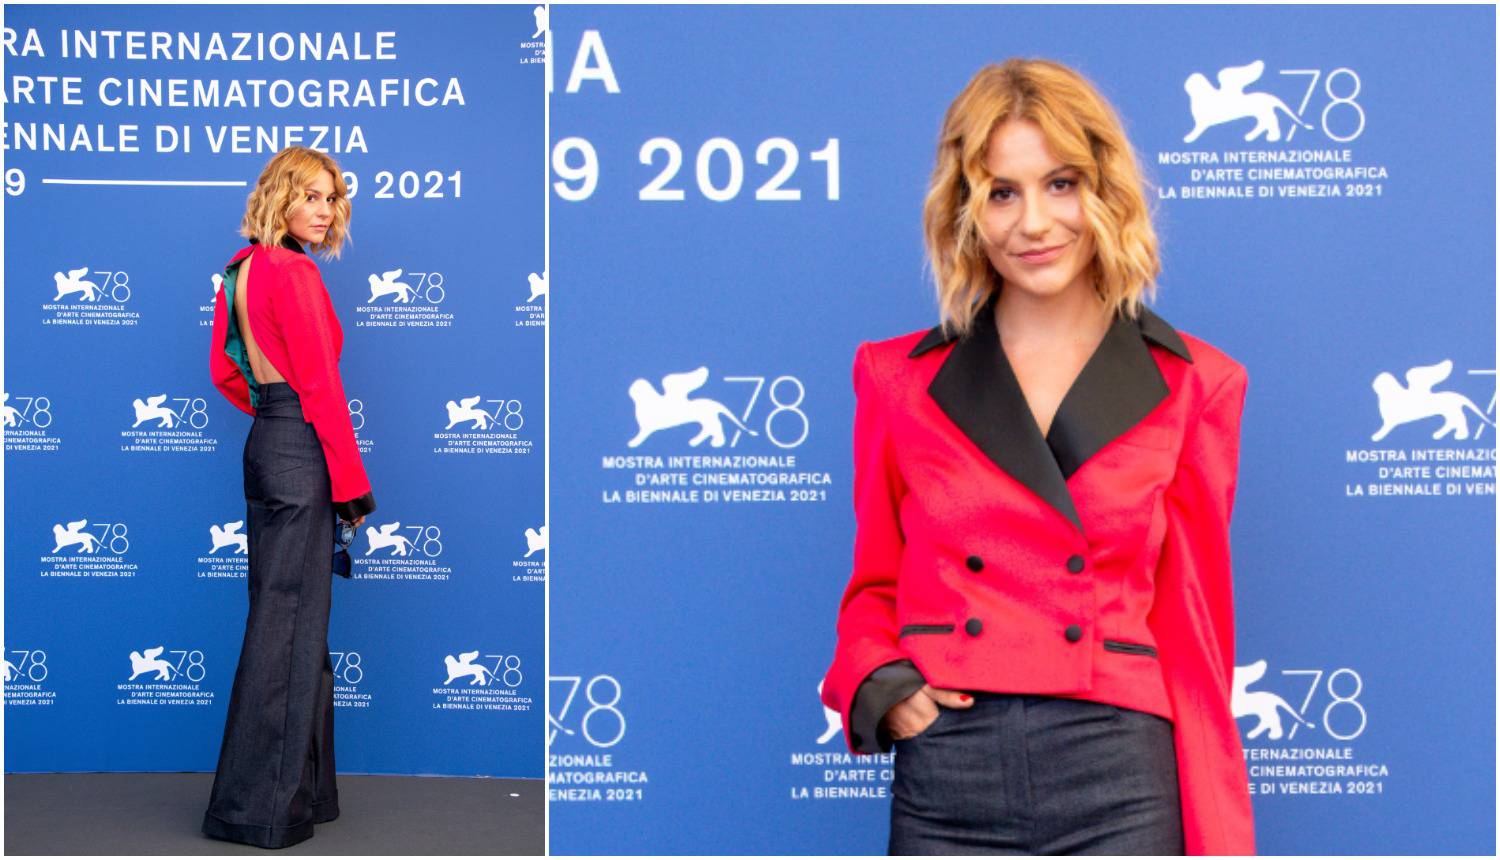 Vogue zadarsku glumicu svrstao među najbolje odjevene glumce na filmskom festivalu u Veneciji